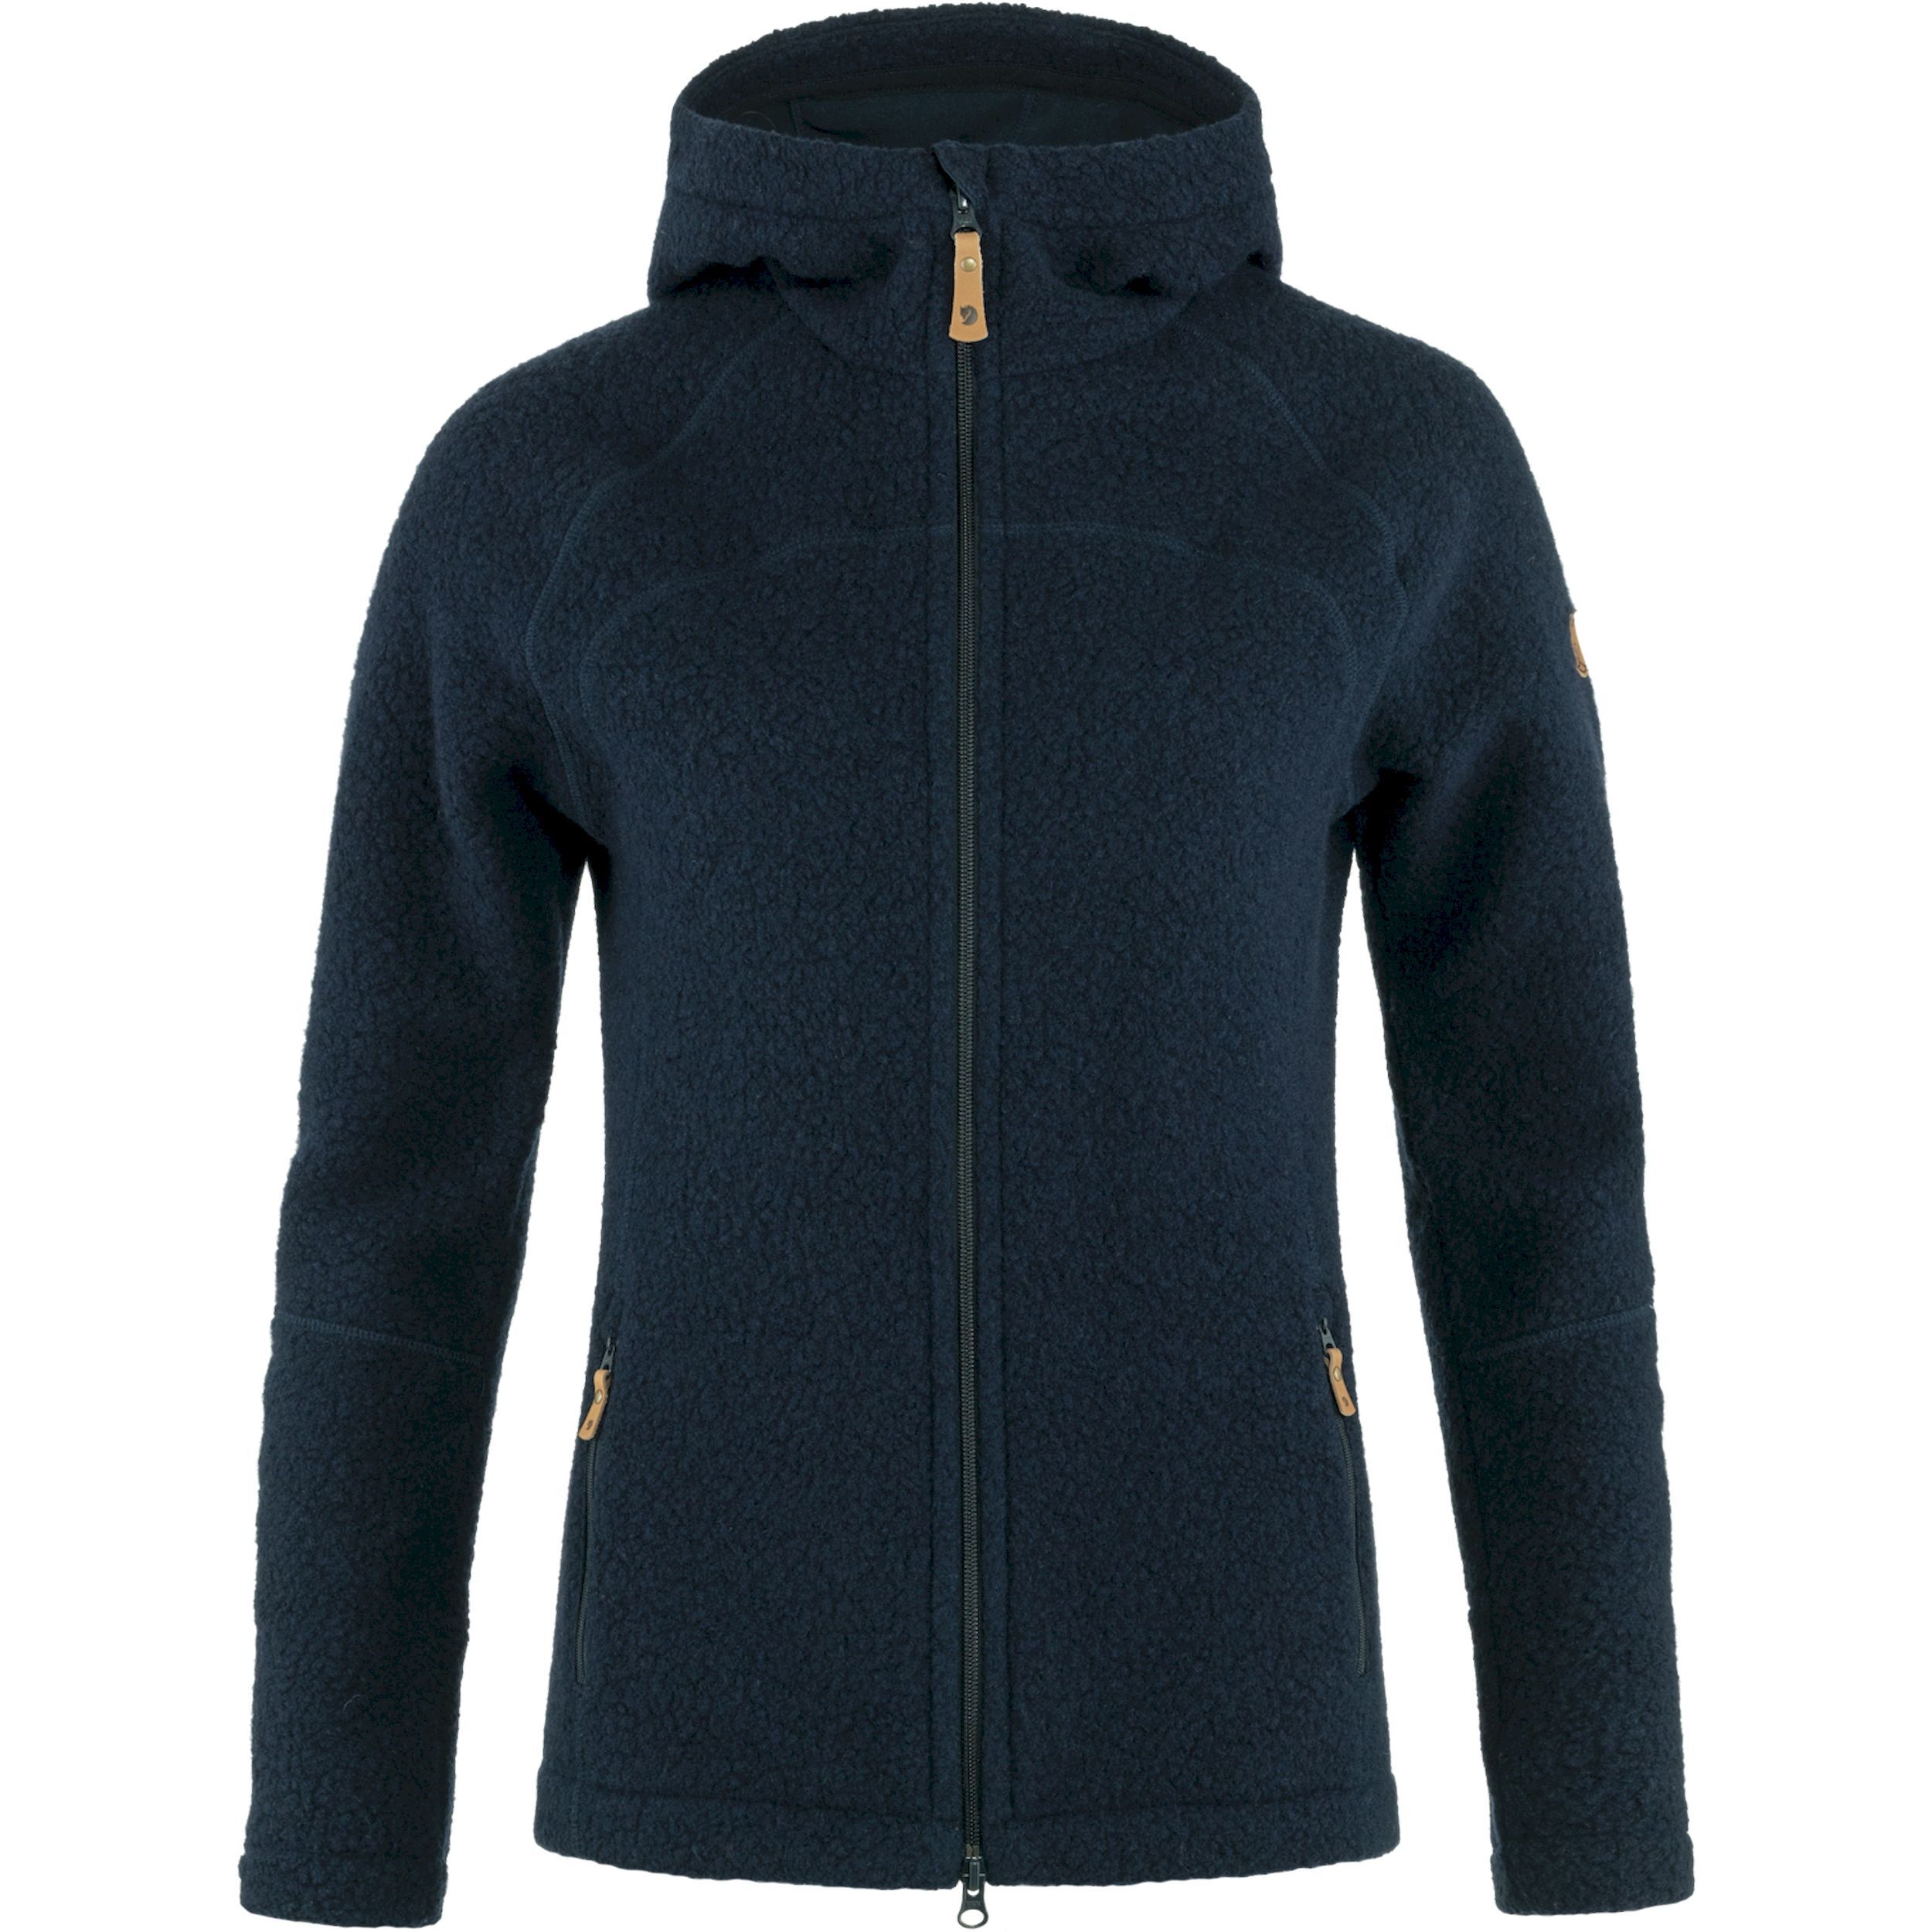 Fjällräven Kaitum Fleece - Fleece jacket - Women's